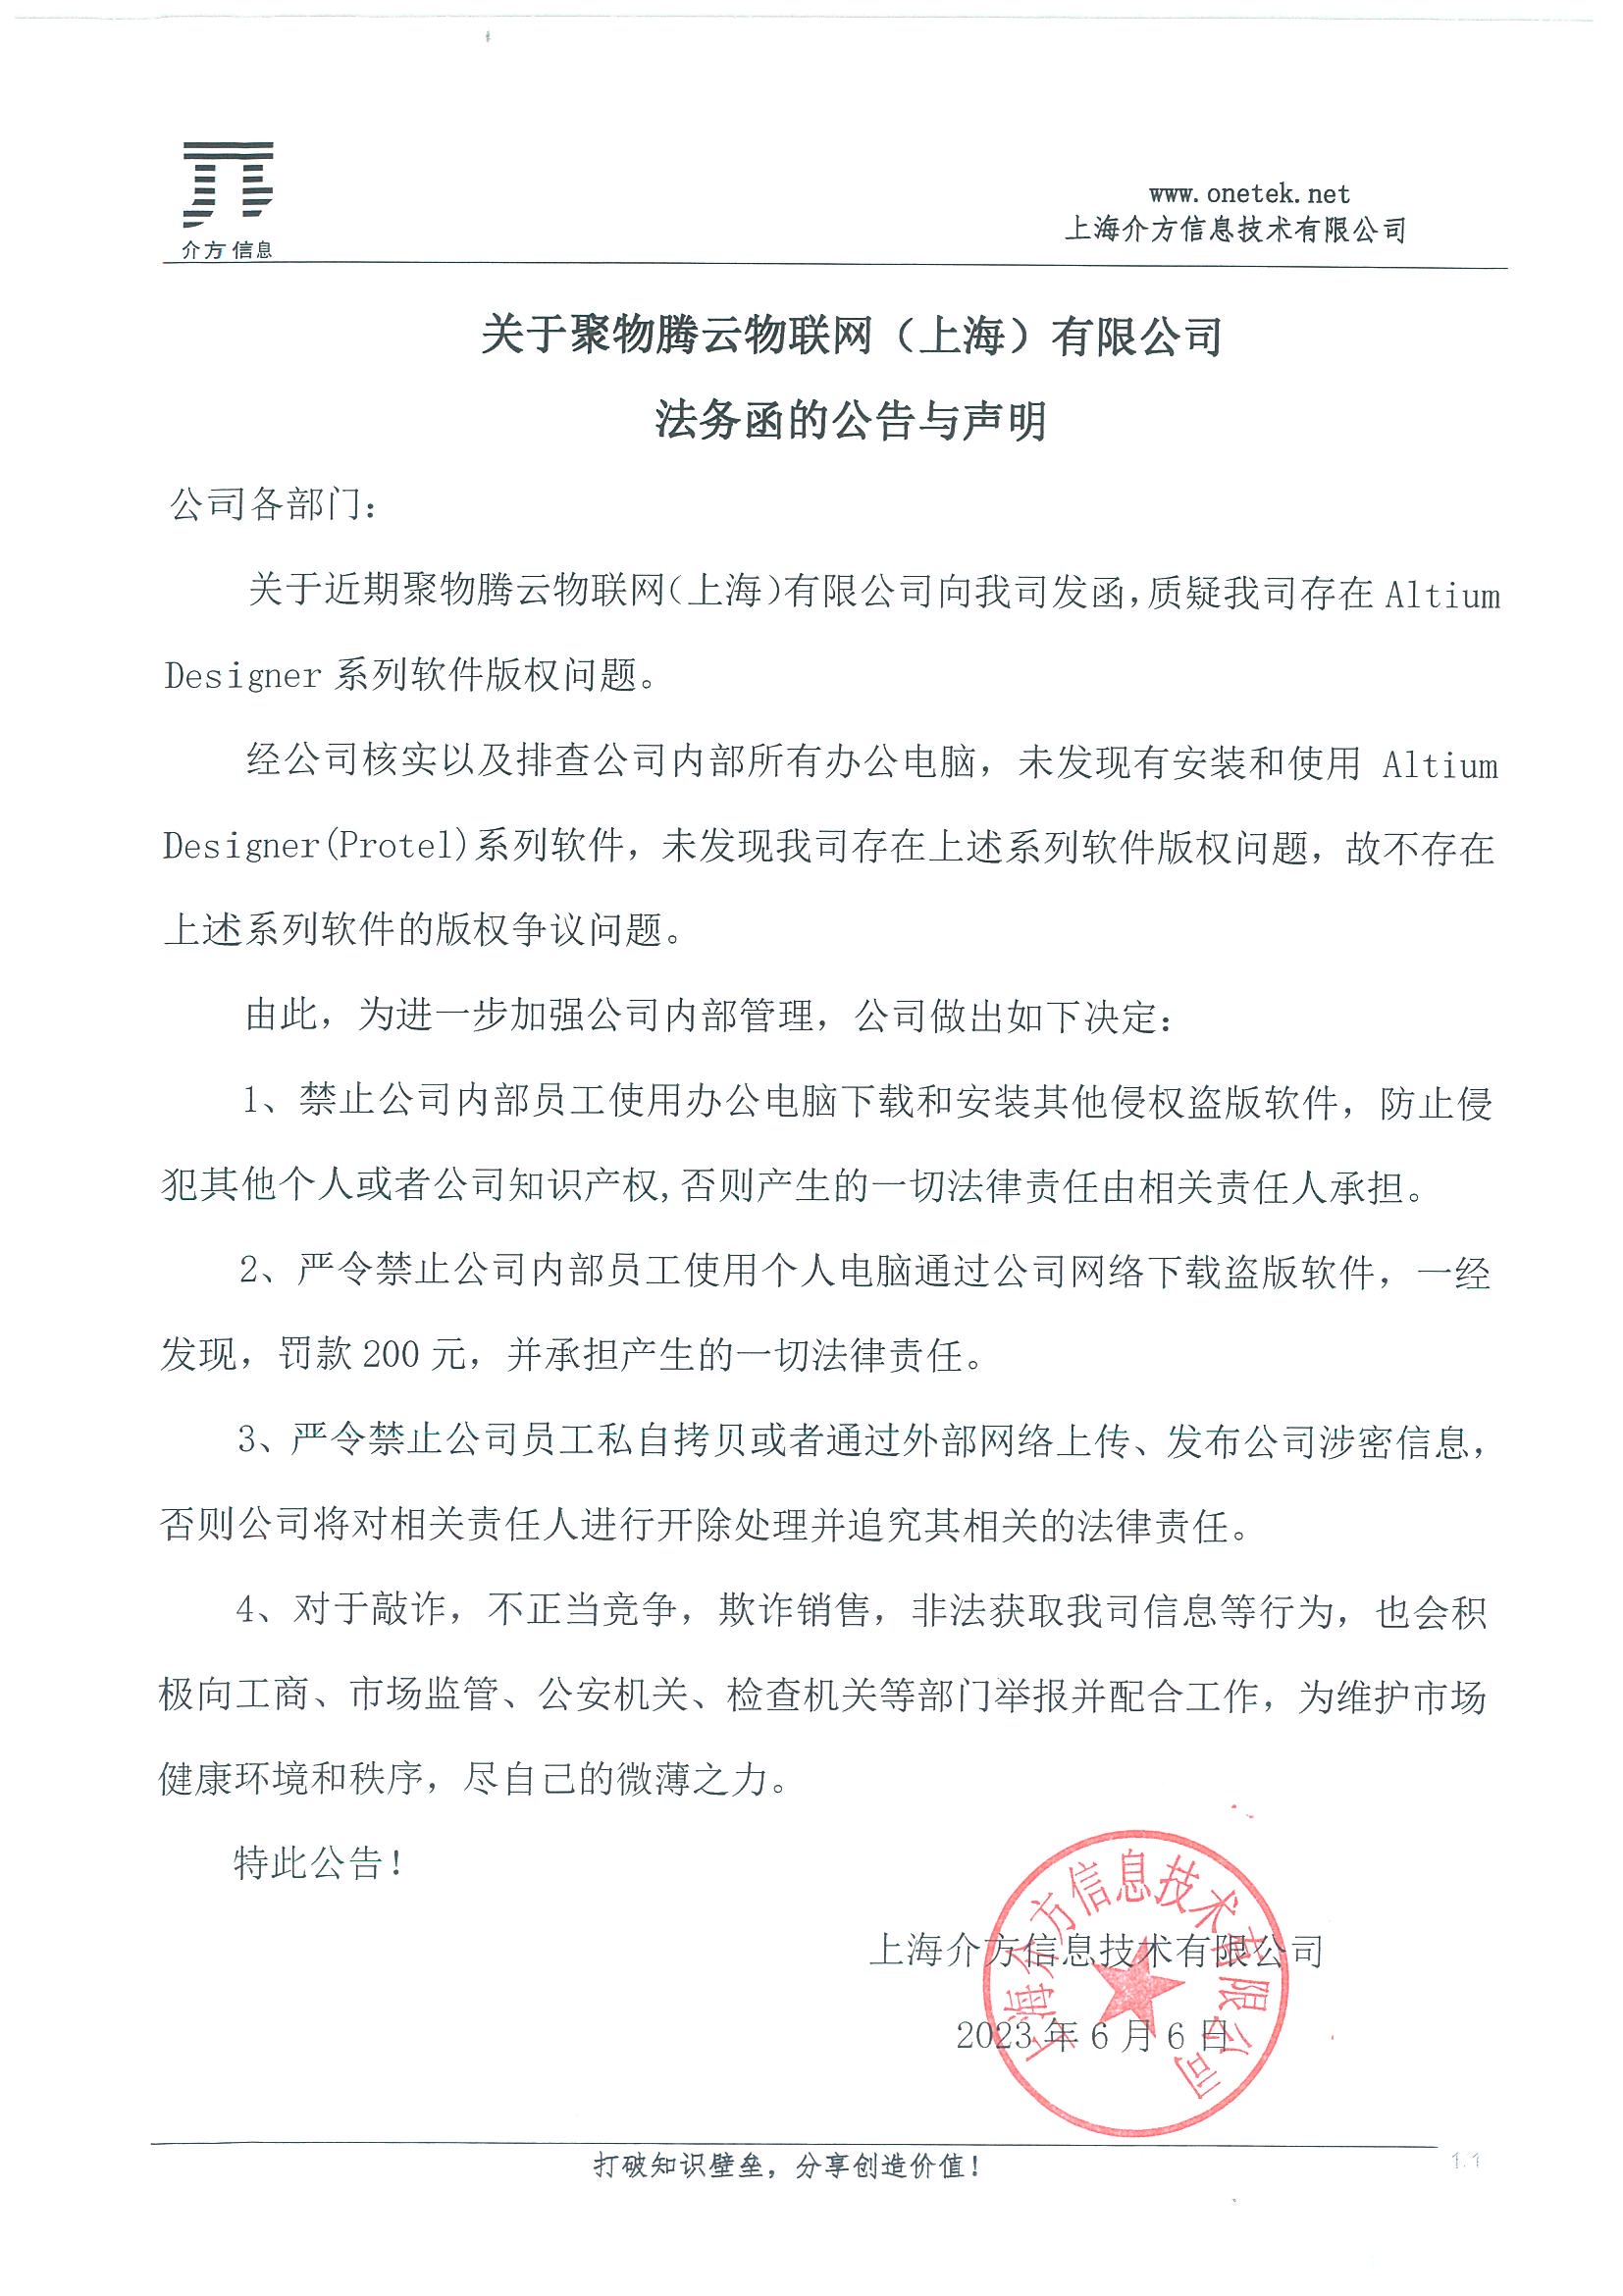 关于聚物腾云物联网（上海）有限公司法务函的公告与声明.jpg